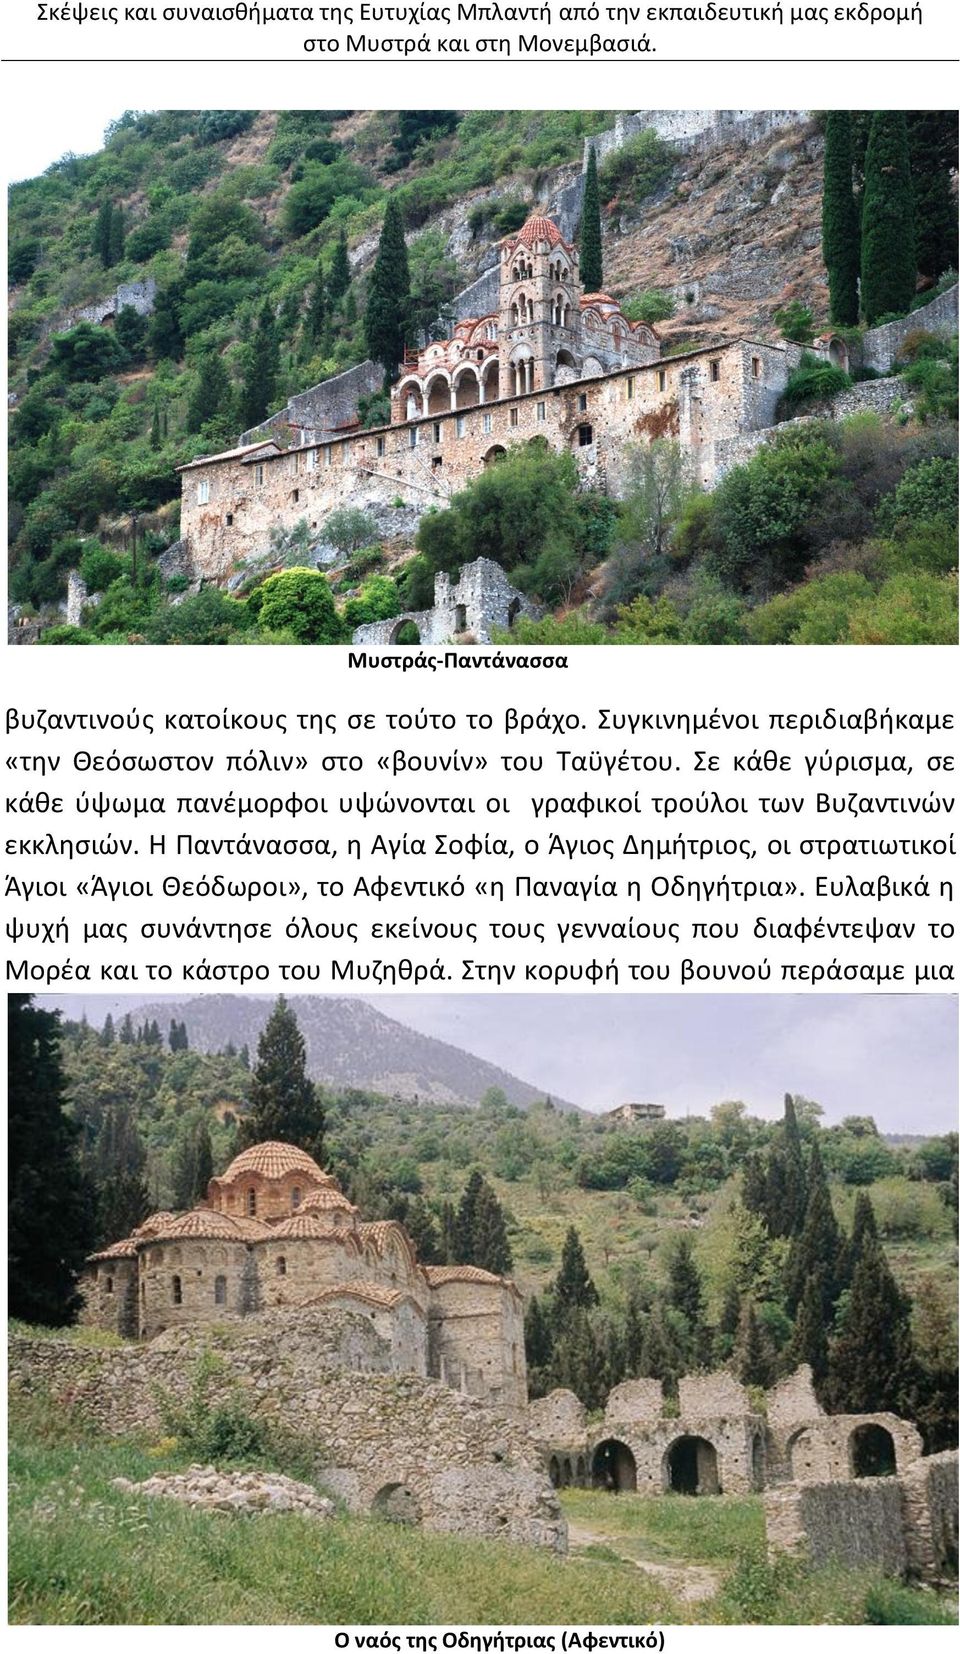 Σε κάθε γύρισμα, σε κάθε ύψωμα πανέμορφοι υψώνονται οι γραφικοί τρούλοι των Βυζαντινών εκκλησιών.